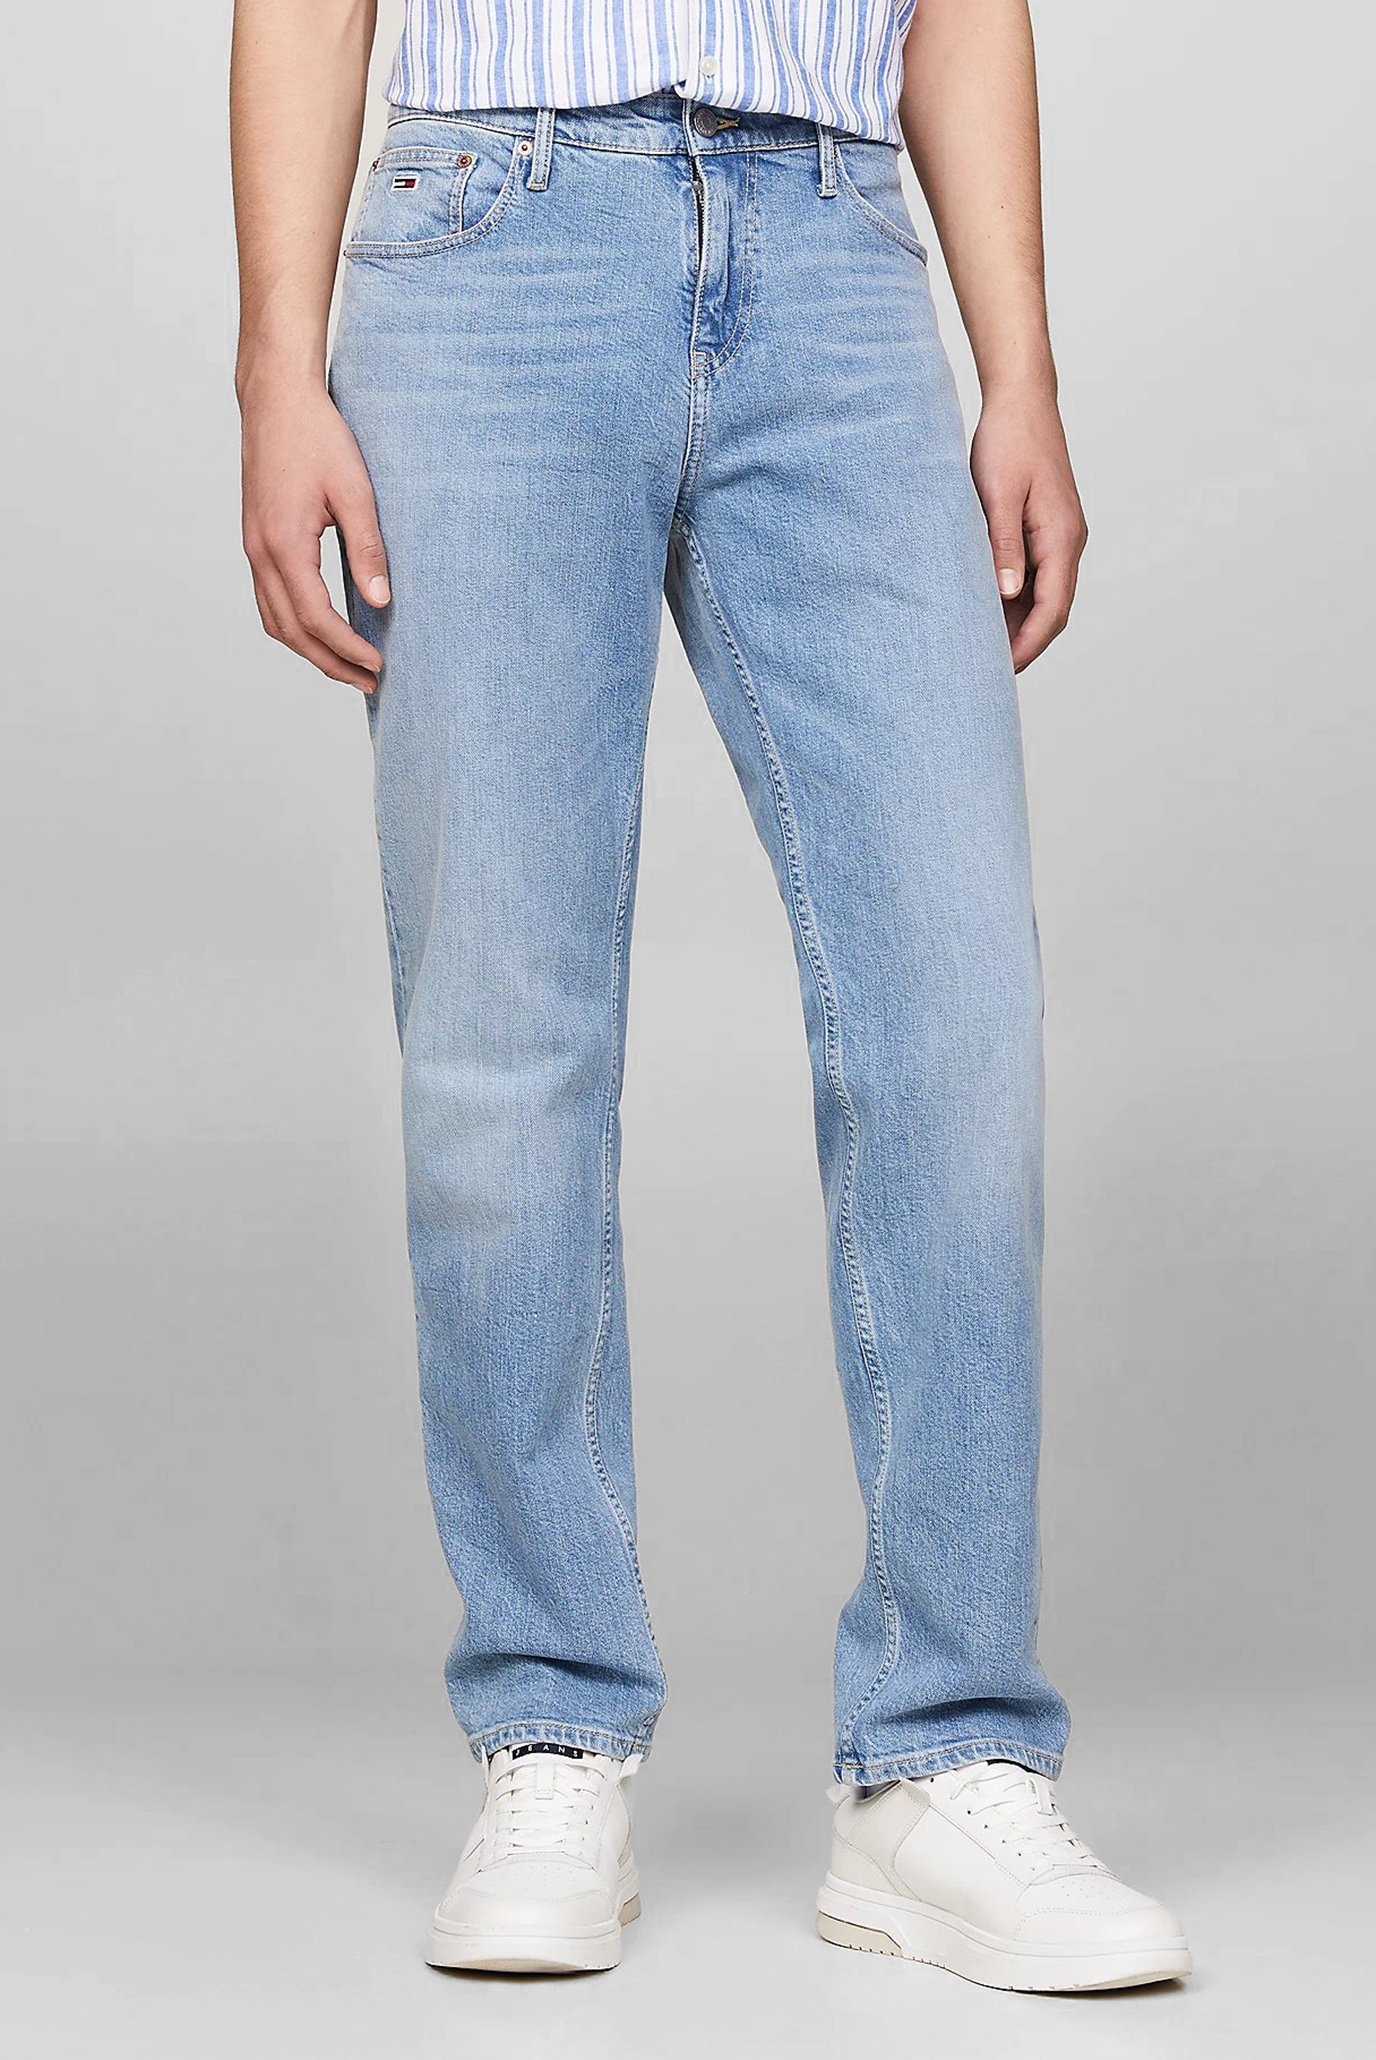 Чоловічі блакитні джинси RYAN RGLR STRGHT 1